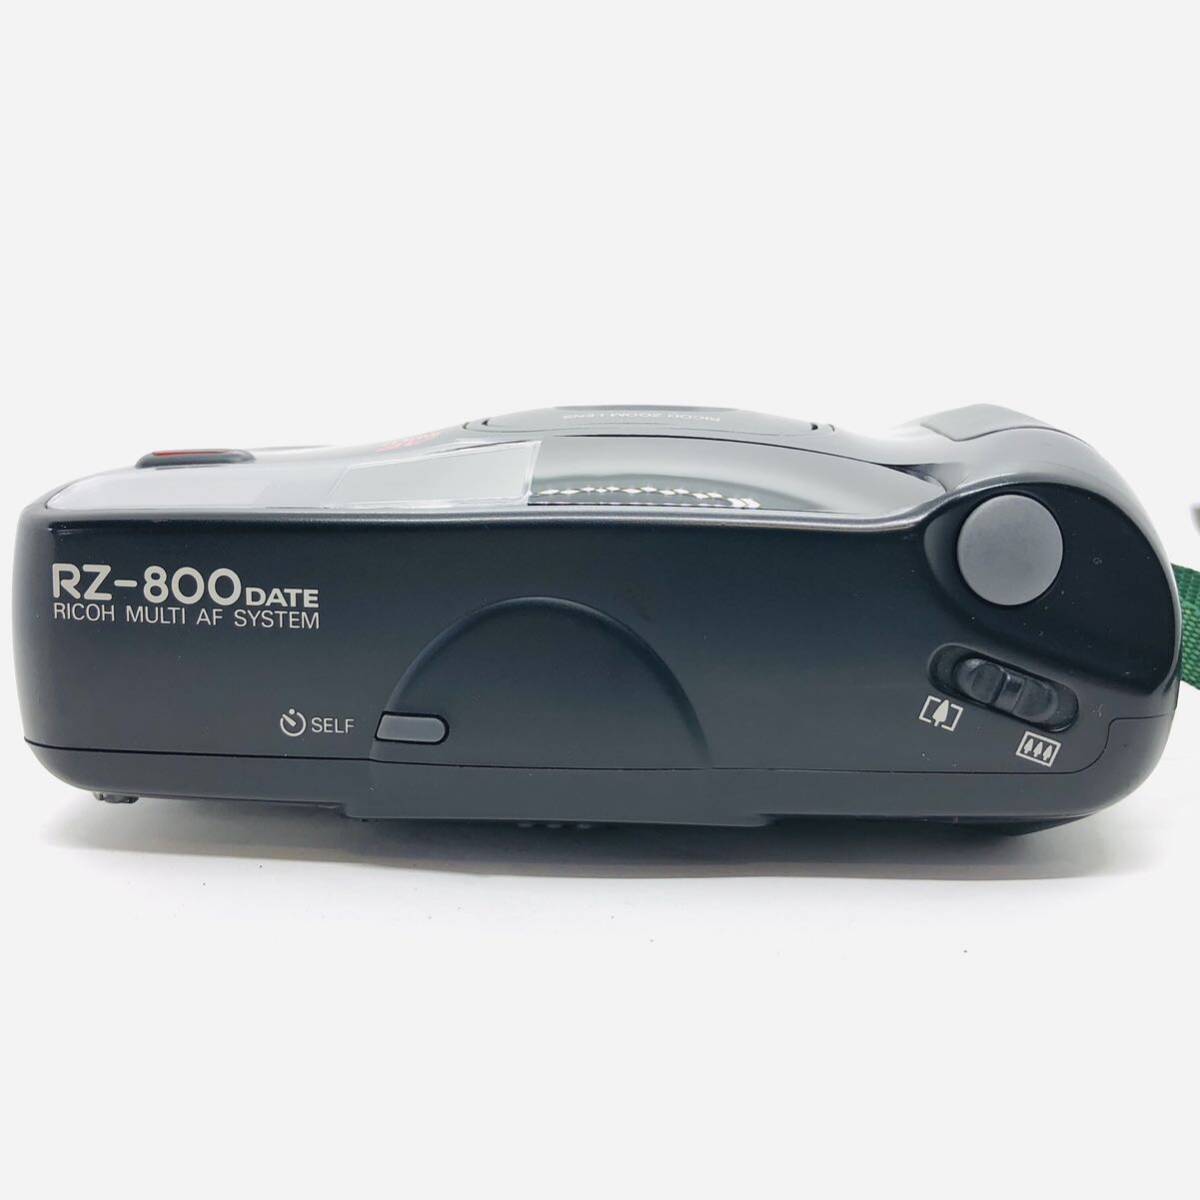 ★極上品★RICOH リコー RZ-800 DATE 38-80mm MACROコンパクトフィルムカメラ #20240419_0001の画像4